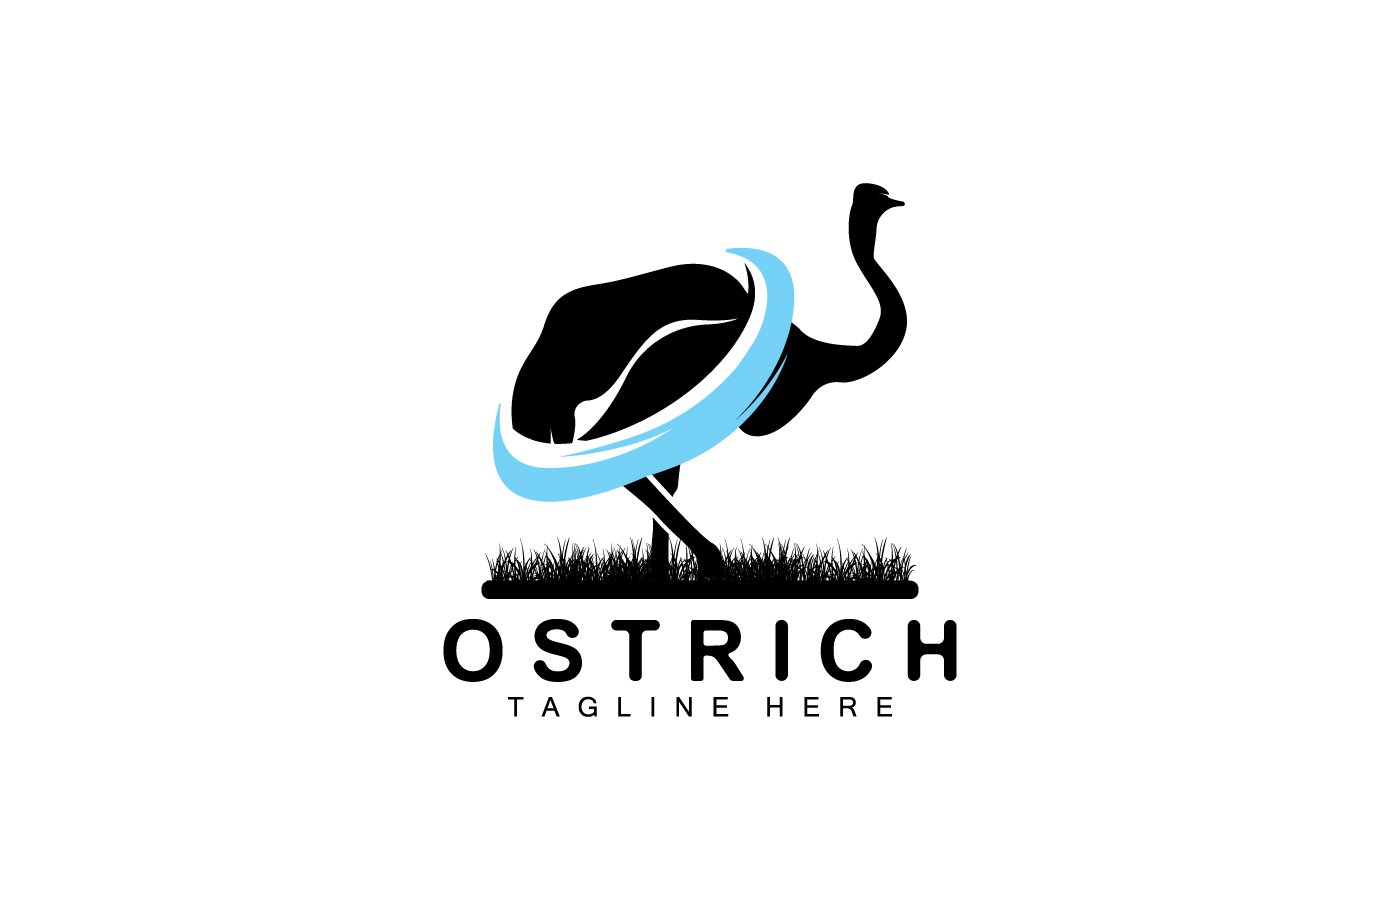 Ostrich Logo Design Desert Animal Illustration V21